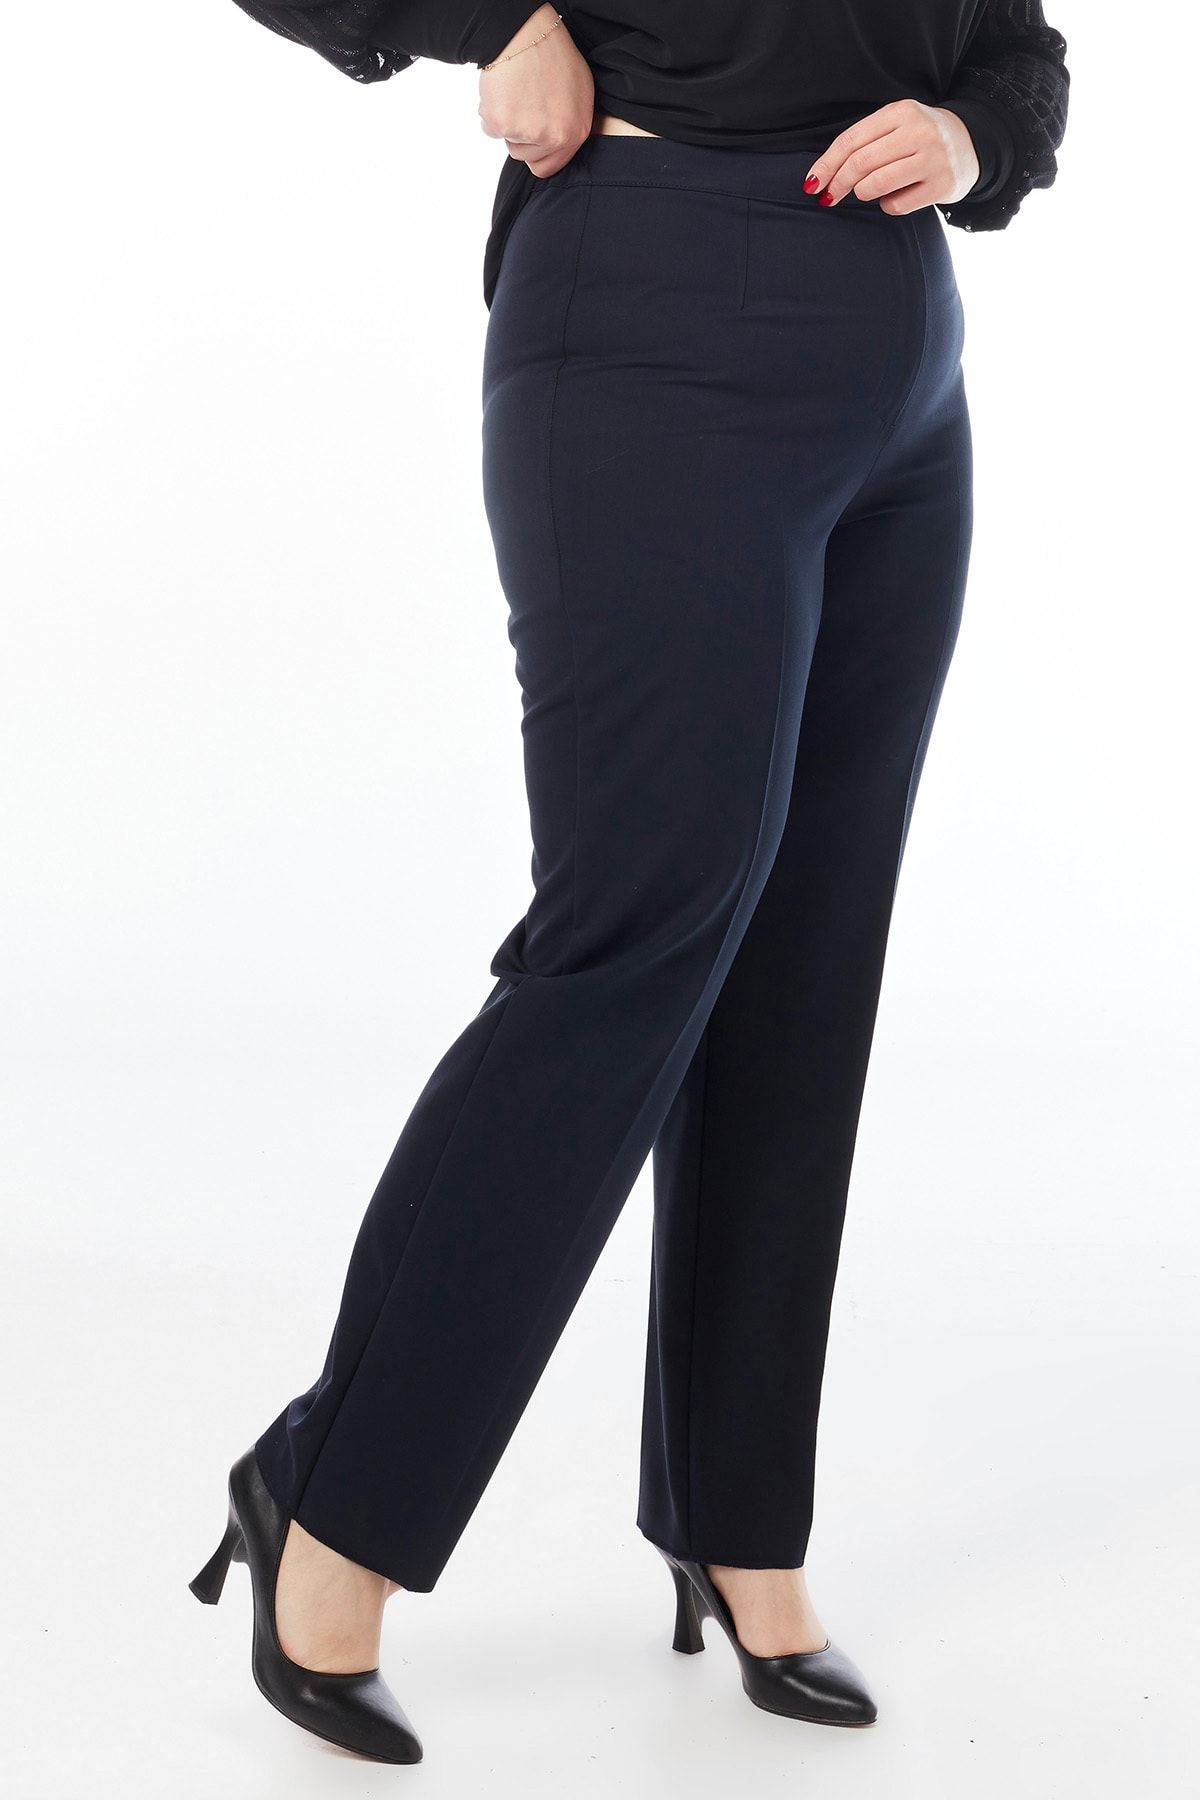 Moda Alba Lacivert Klasik Beli Lastikli Büyük Beden Yüksek Bel Kumaş Pantalon